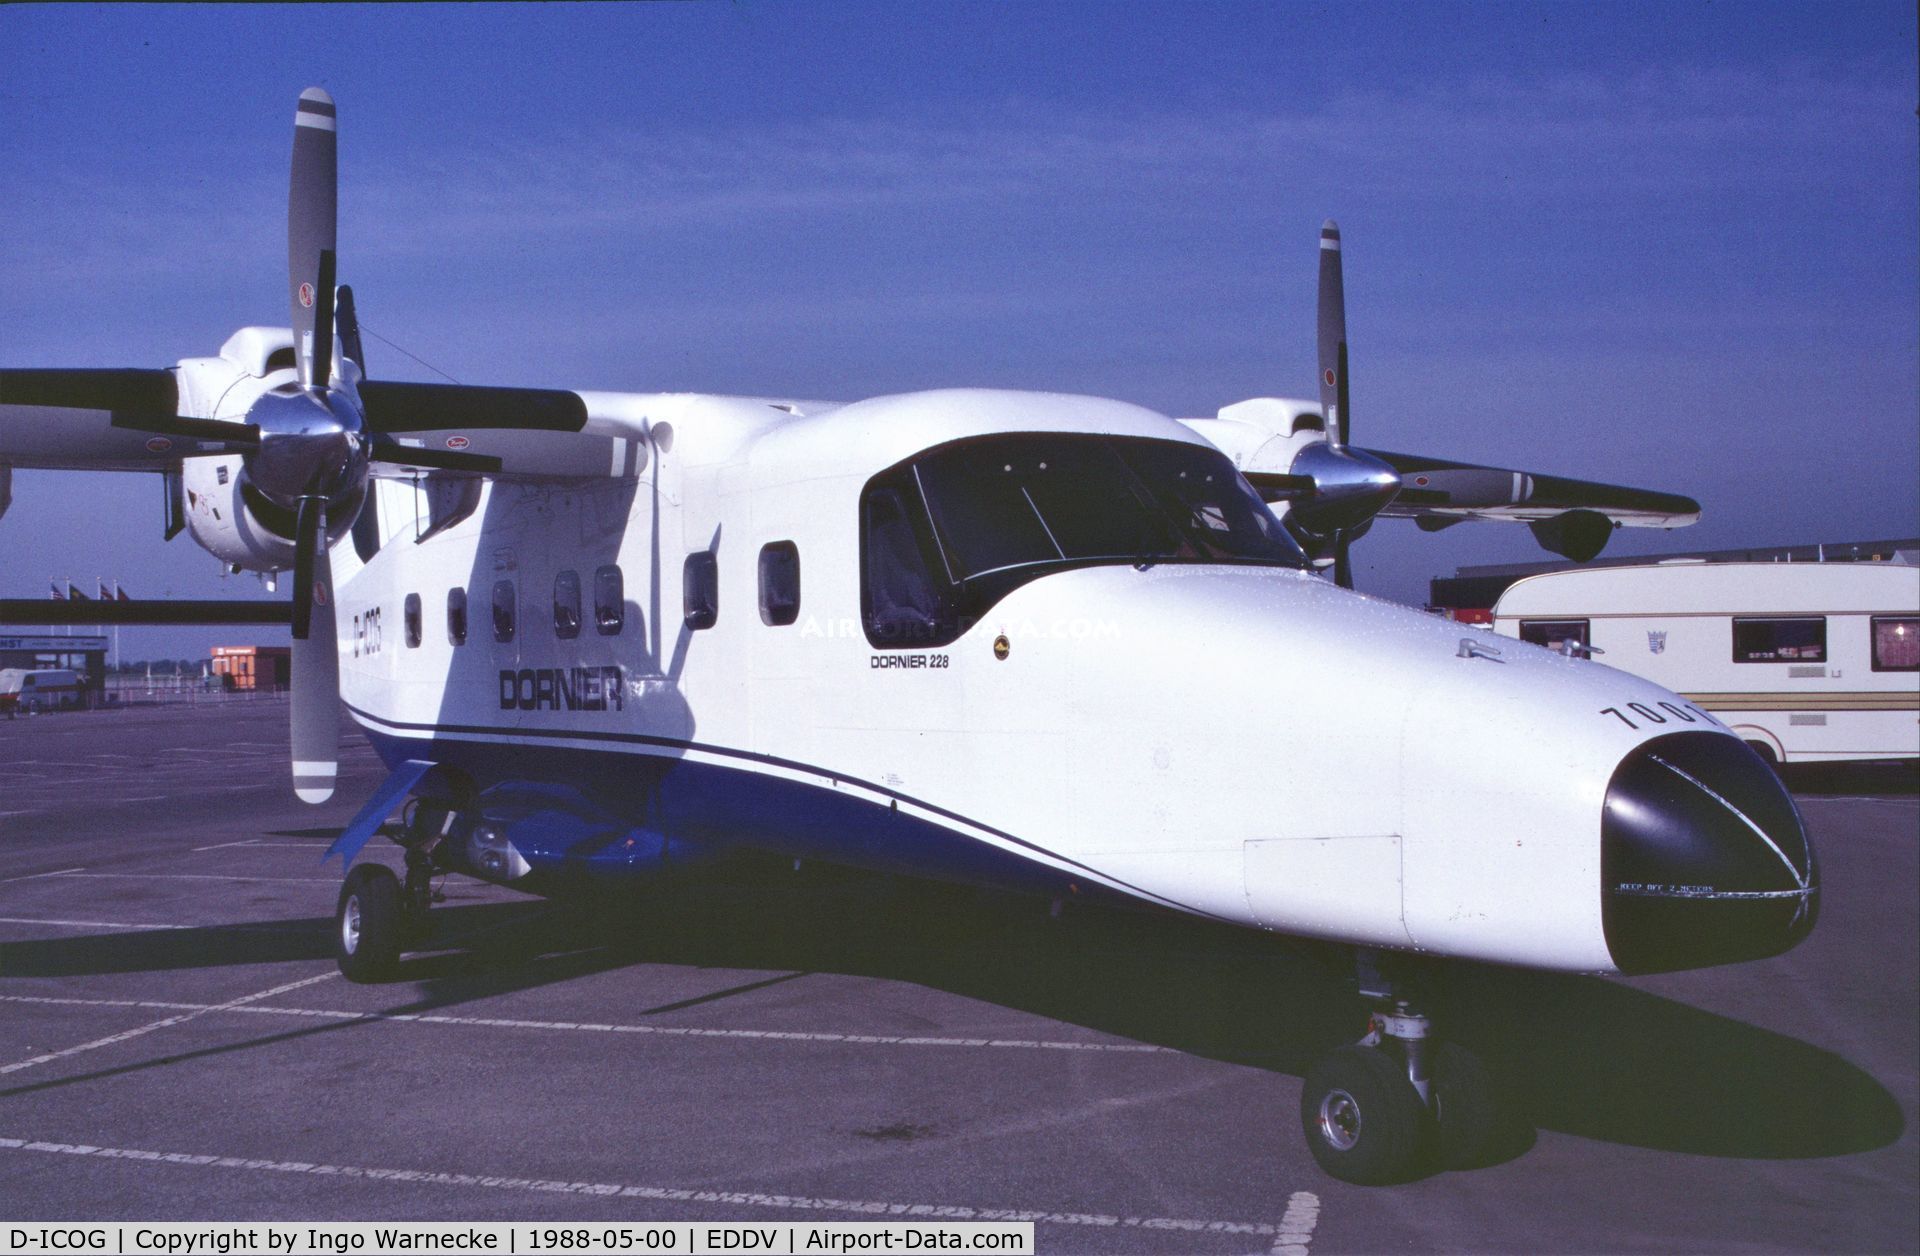 D-ICOG, 1982 Dornier 228-100 C/N 7001, Dornier 228-100 demonstrator at the Internationale Luftfahrtausstellung ILA, Hannover 1988